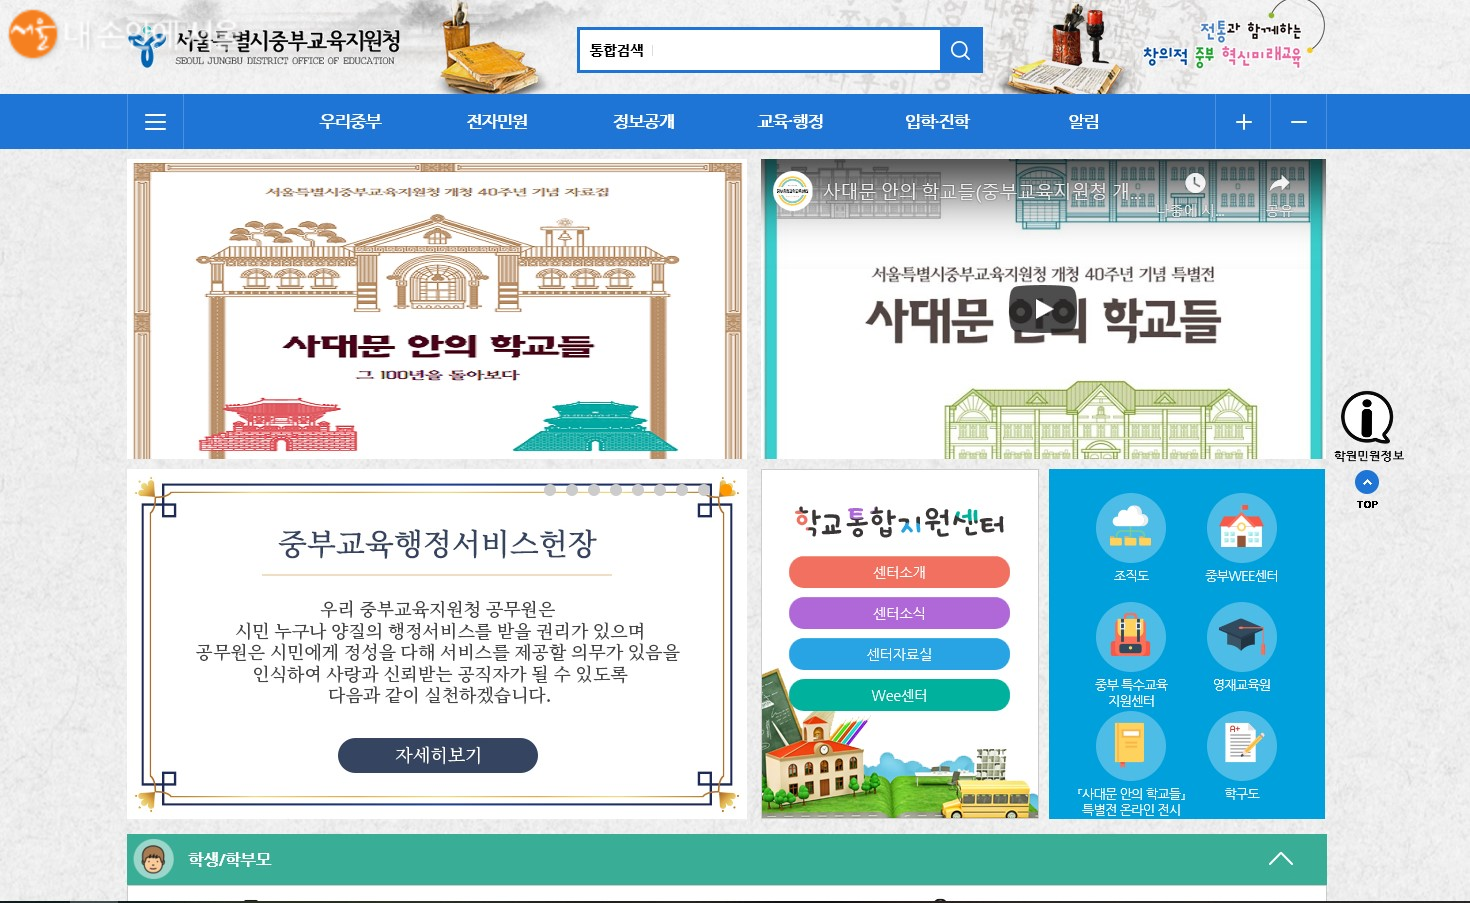 서울중부교육지원청 홈페이지에서 사대문 안의 학교들 역사자료집과 온라인 전시회를 감상할 수 있다